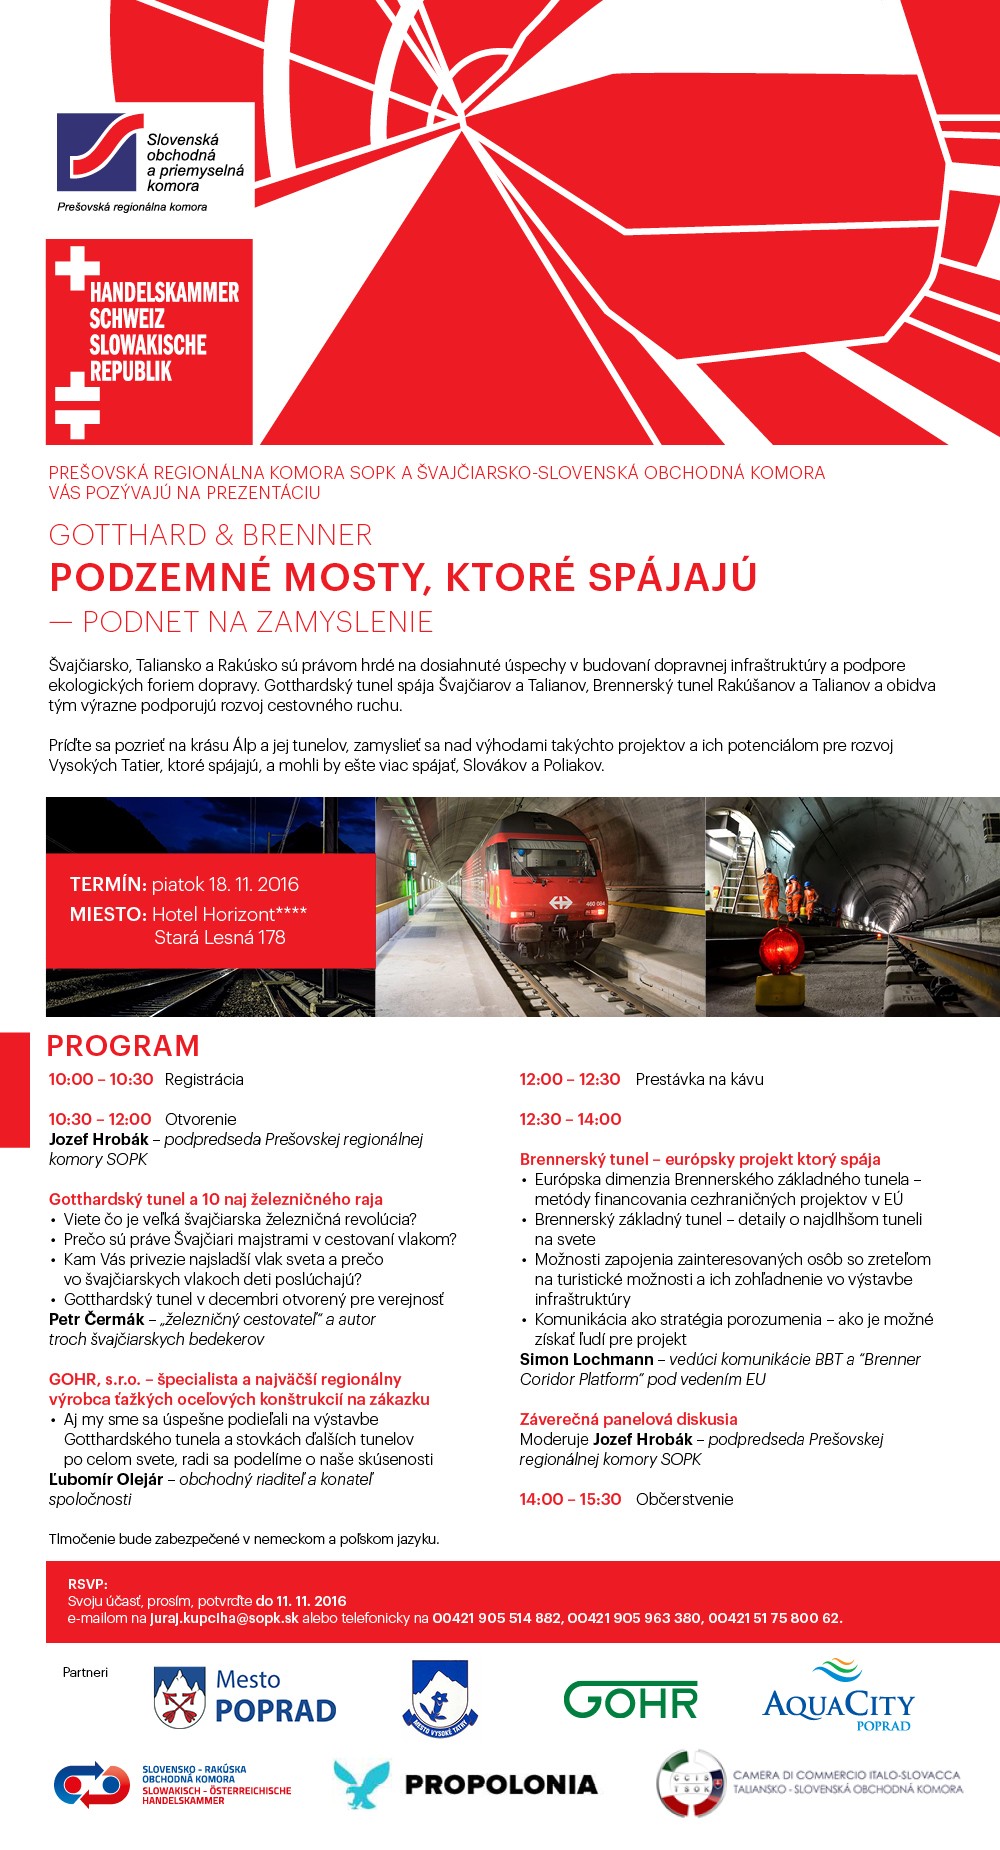 Pozvánka na prezentáciu Gotthard & Brenner, podzemné mosty, ktoré spájajú